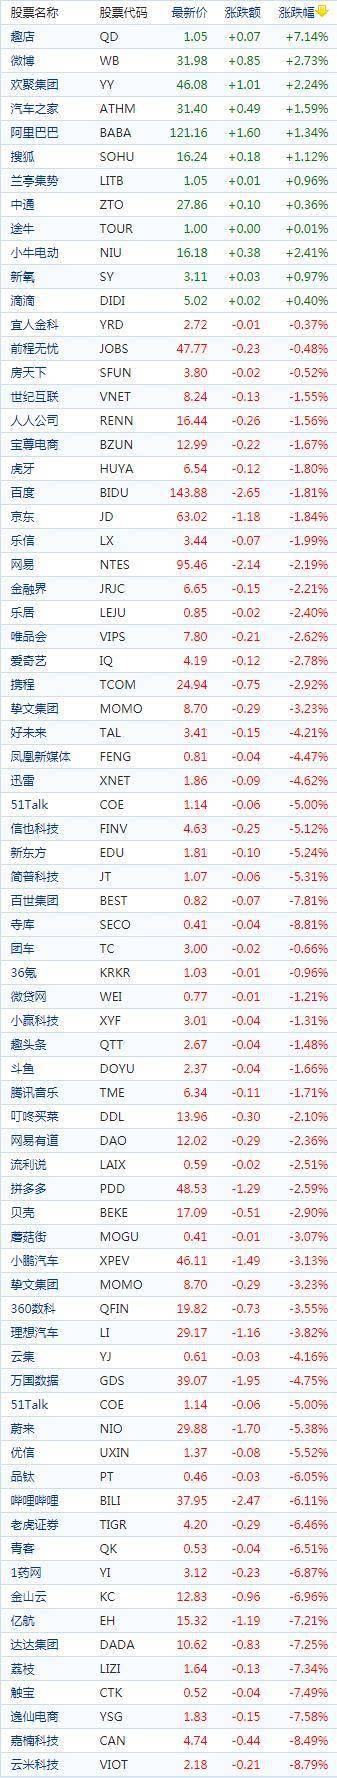 中国概念股周三收盘多数下跌 亿邦国际涨超9%趣店涨超7%